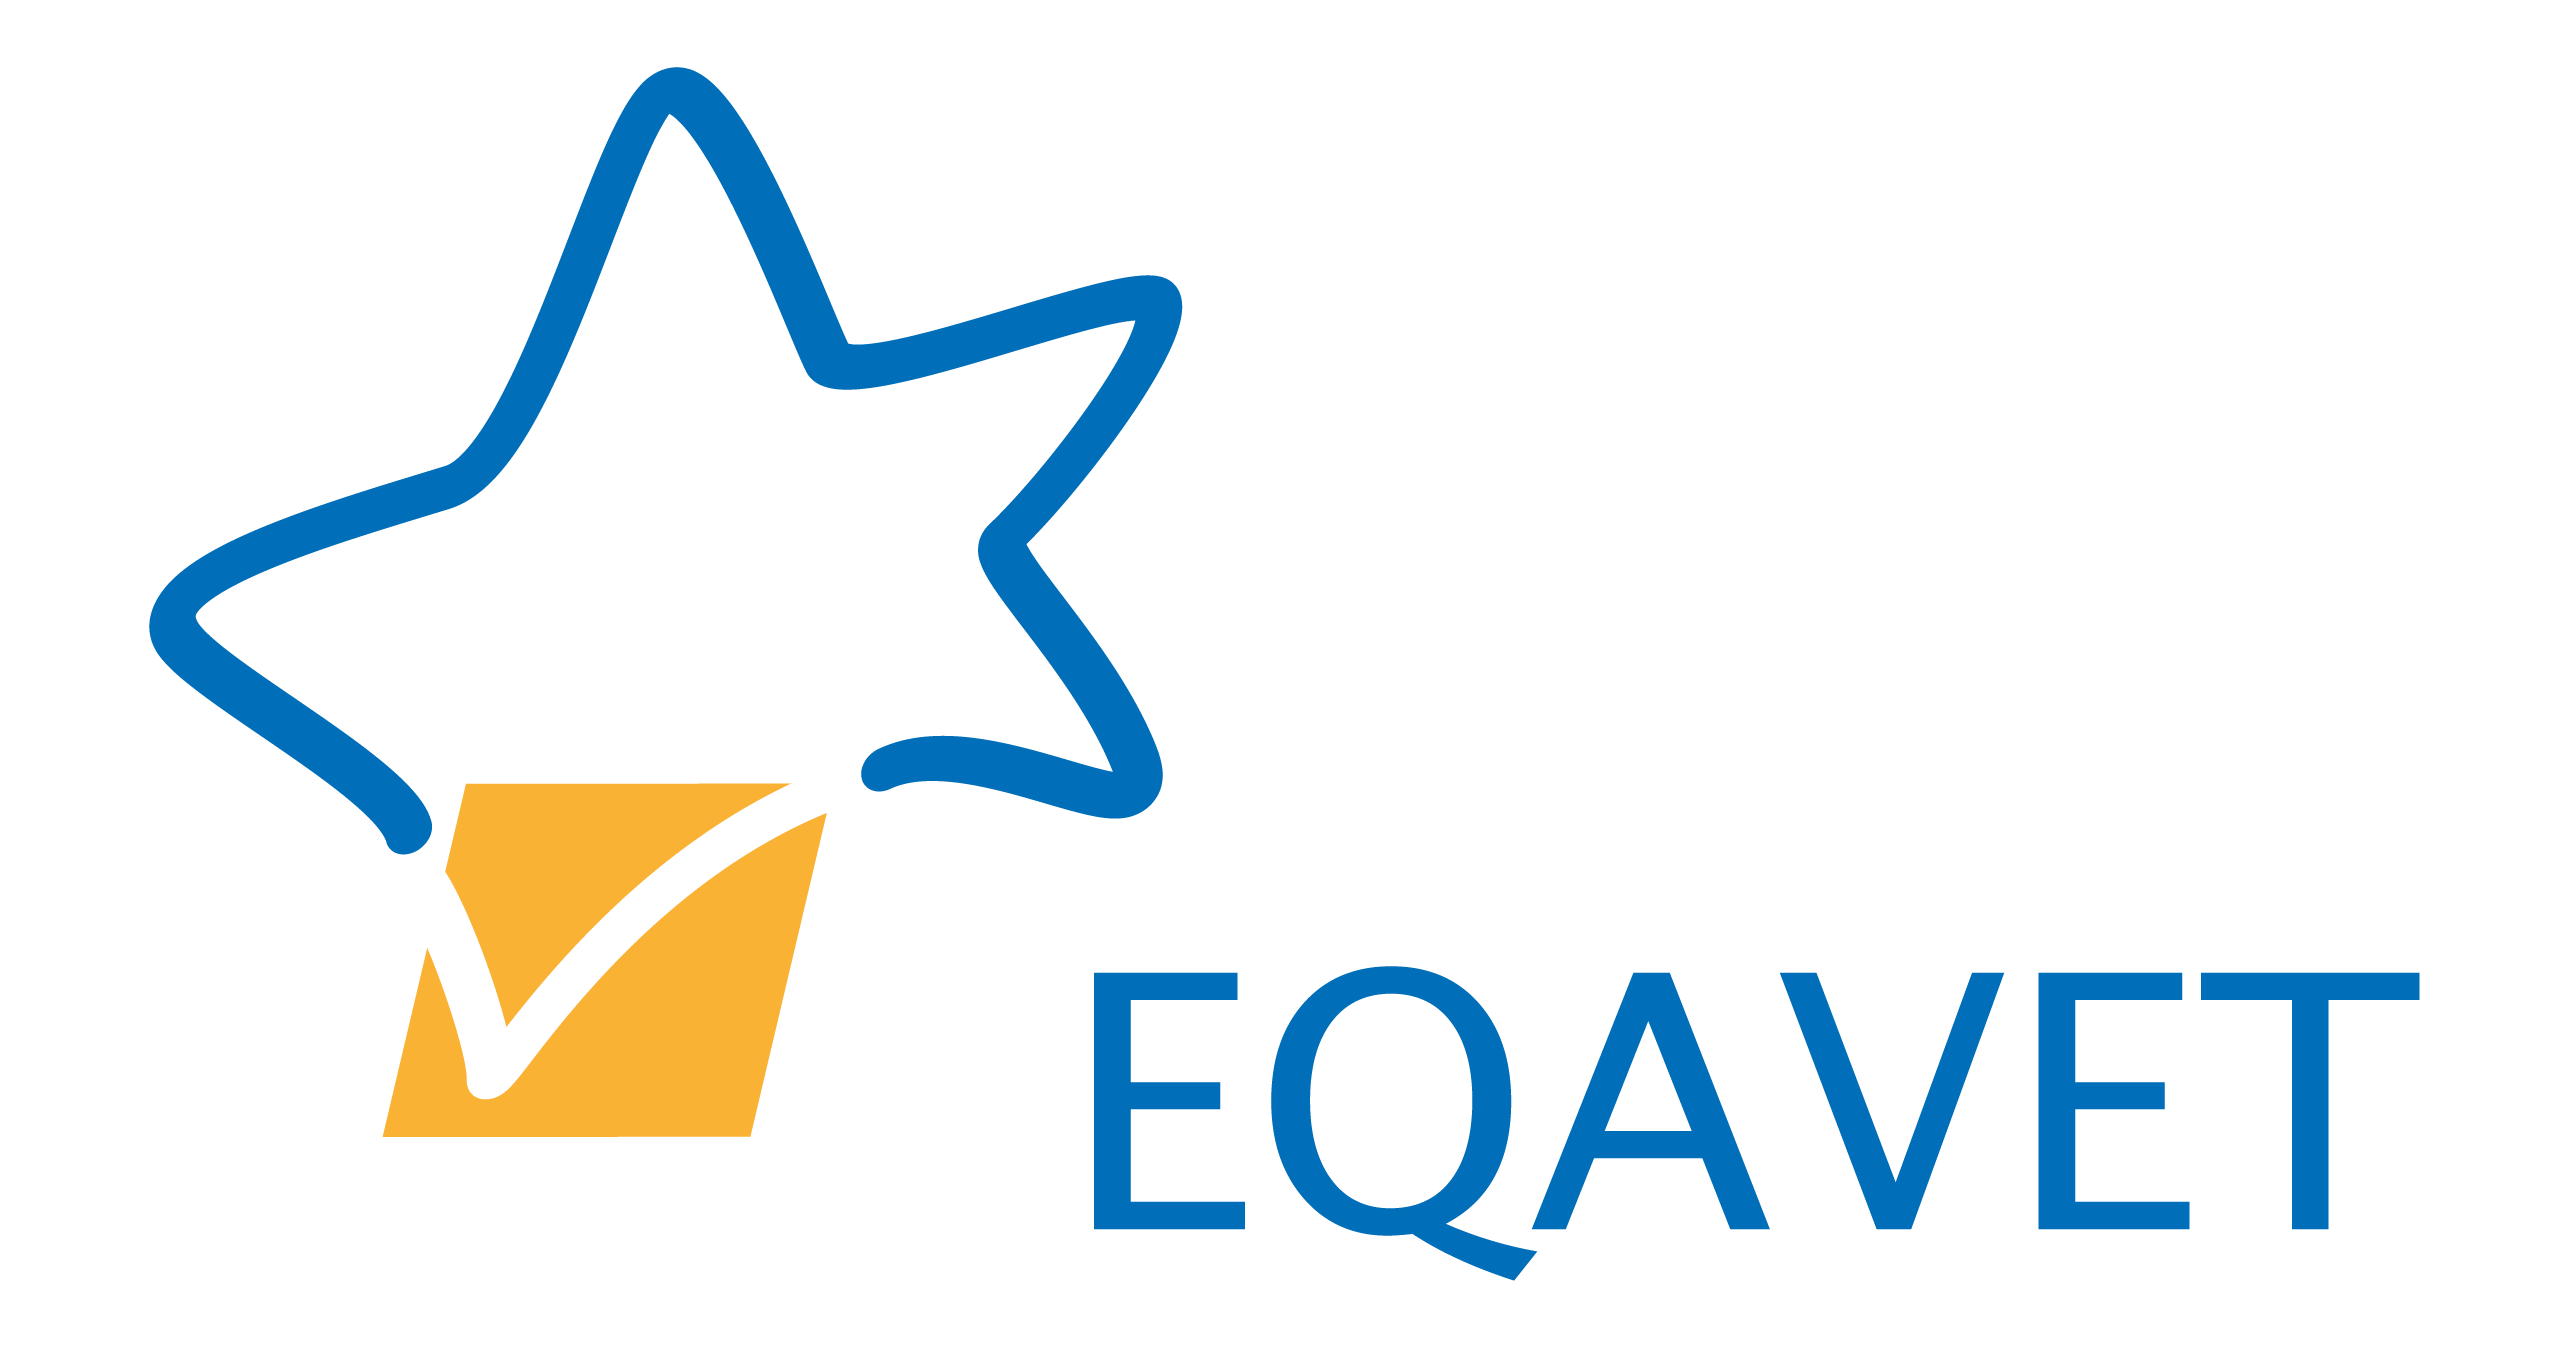 Image of EQAVET logo